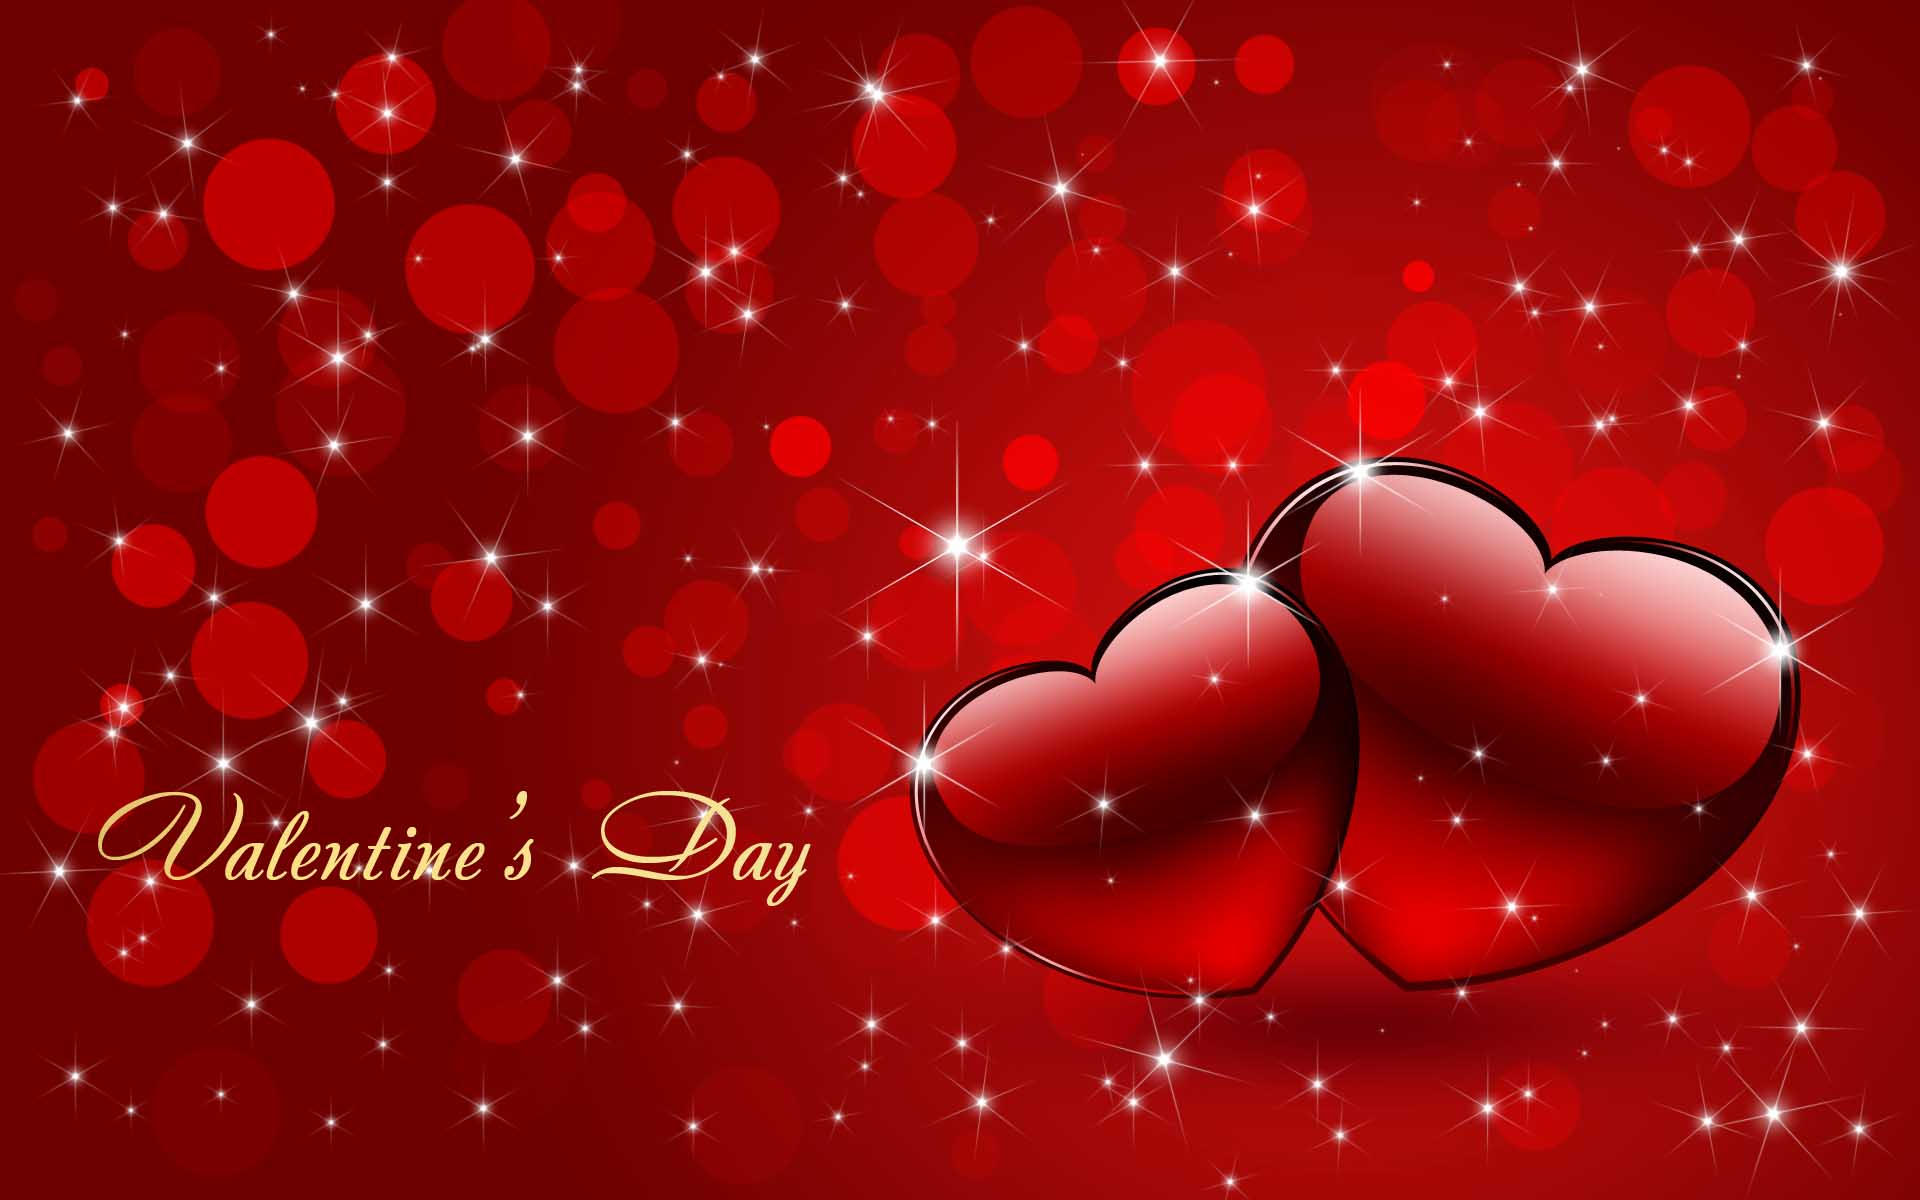 Imágenes San Valentin Día de los Enamorados 14 de febrero